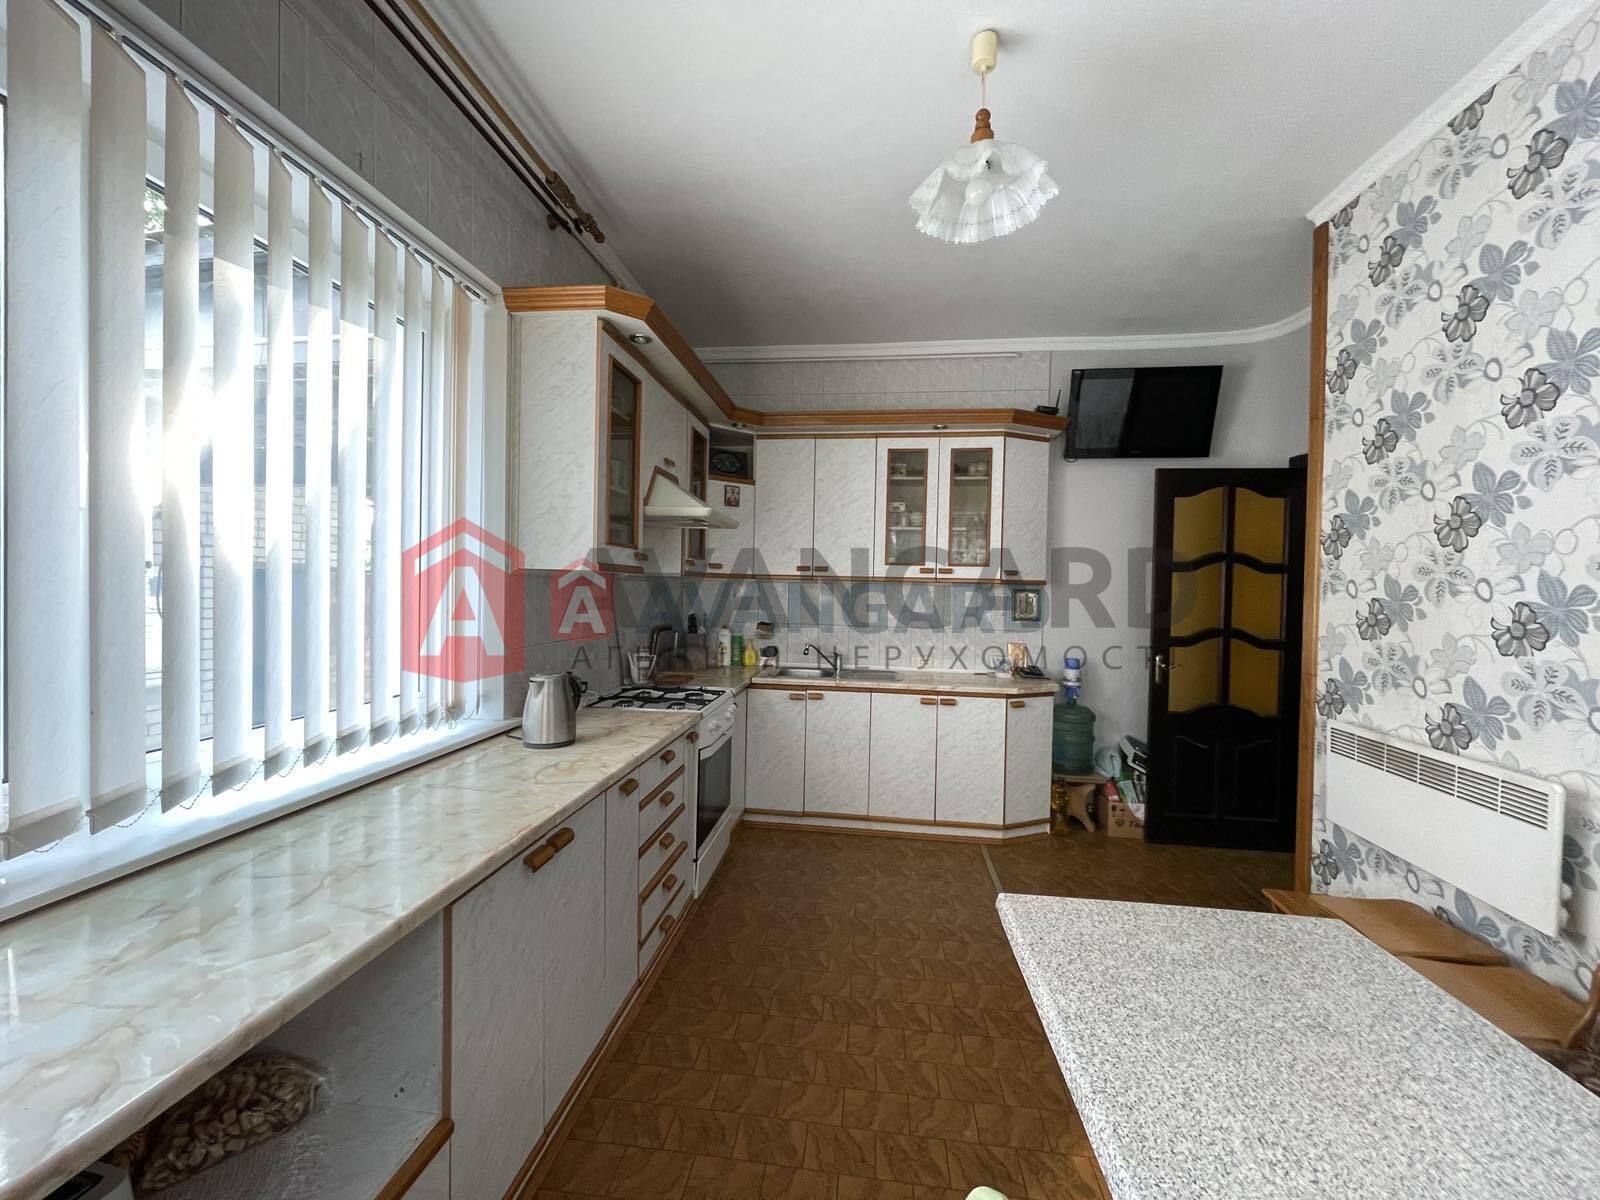 Продам 2-х этажный дом 195 м2 ж/м Игрень, Одинковка, Приднепровск